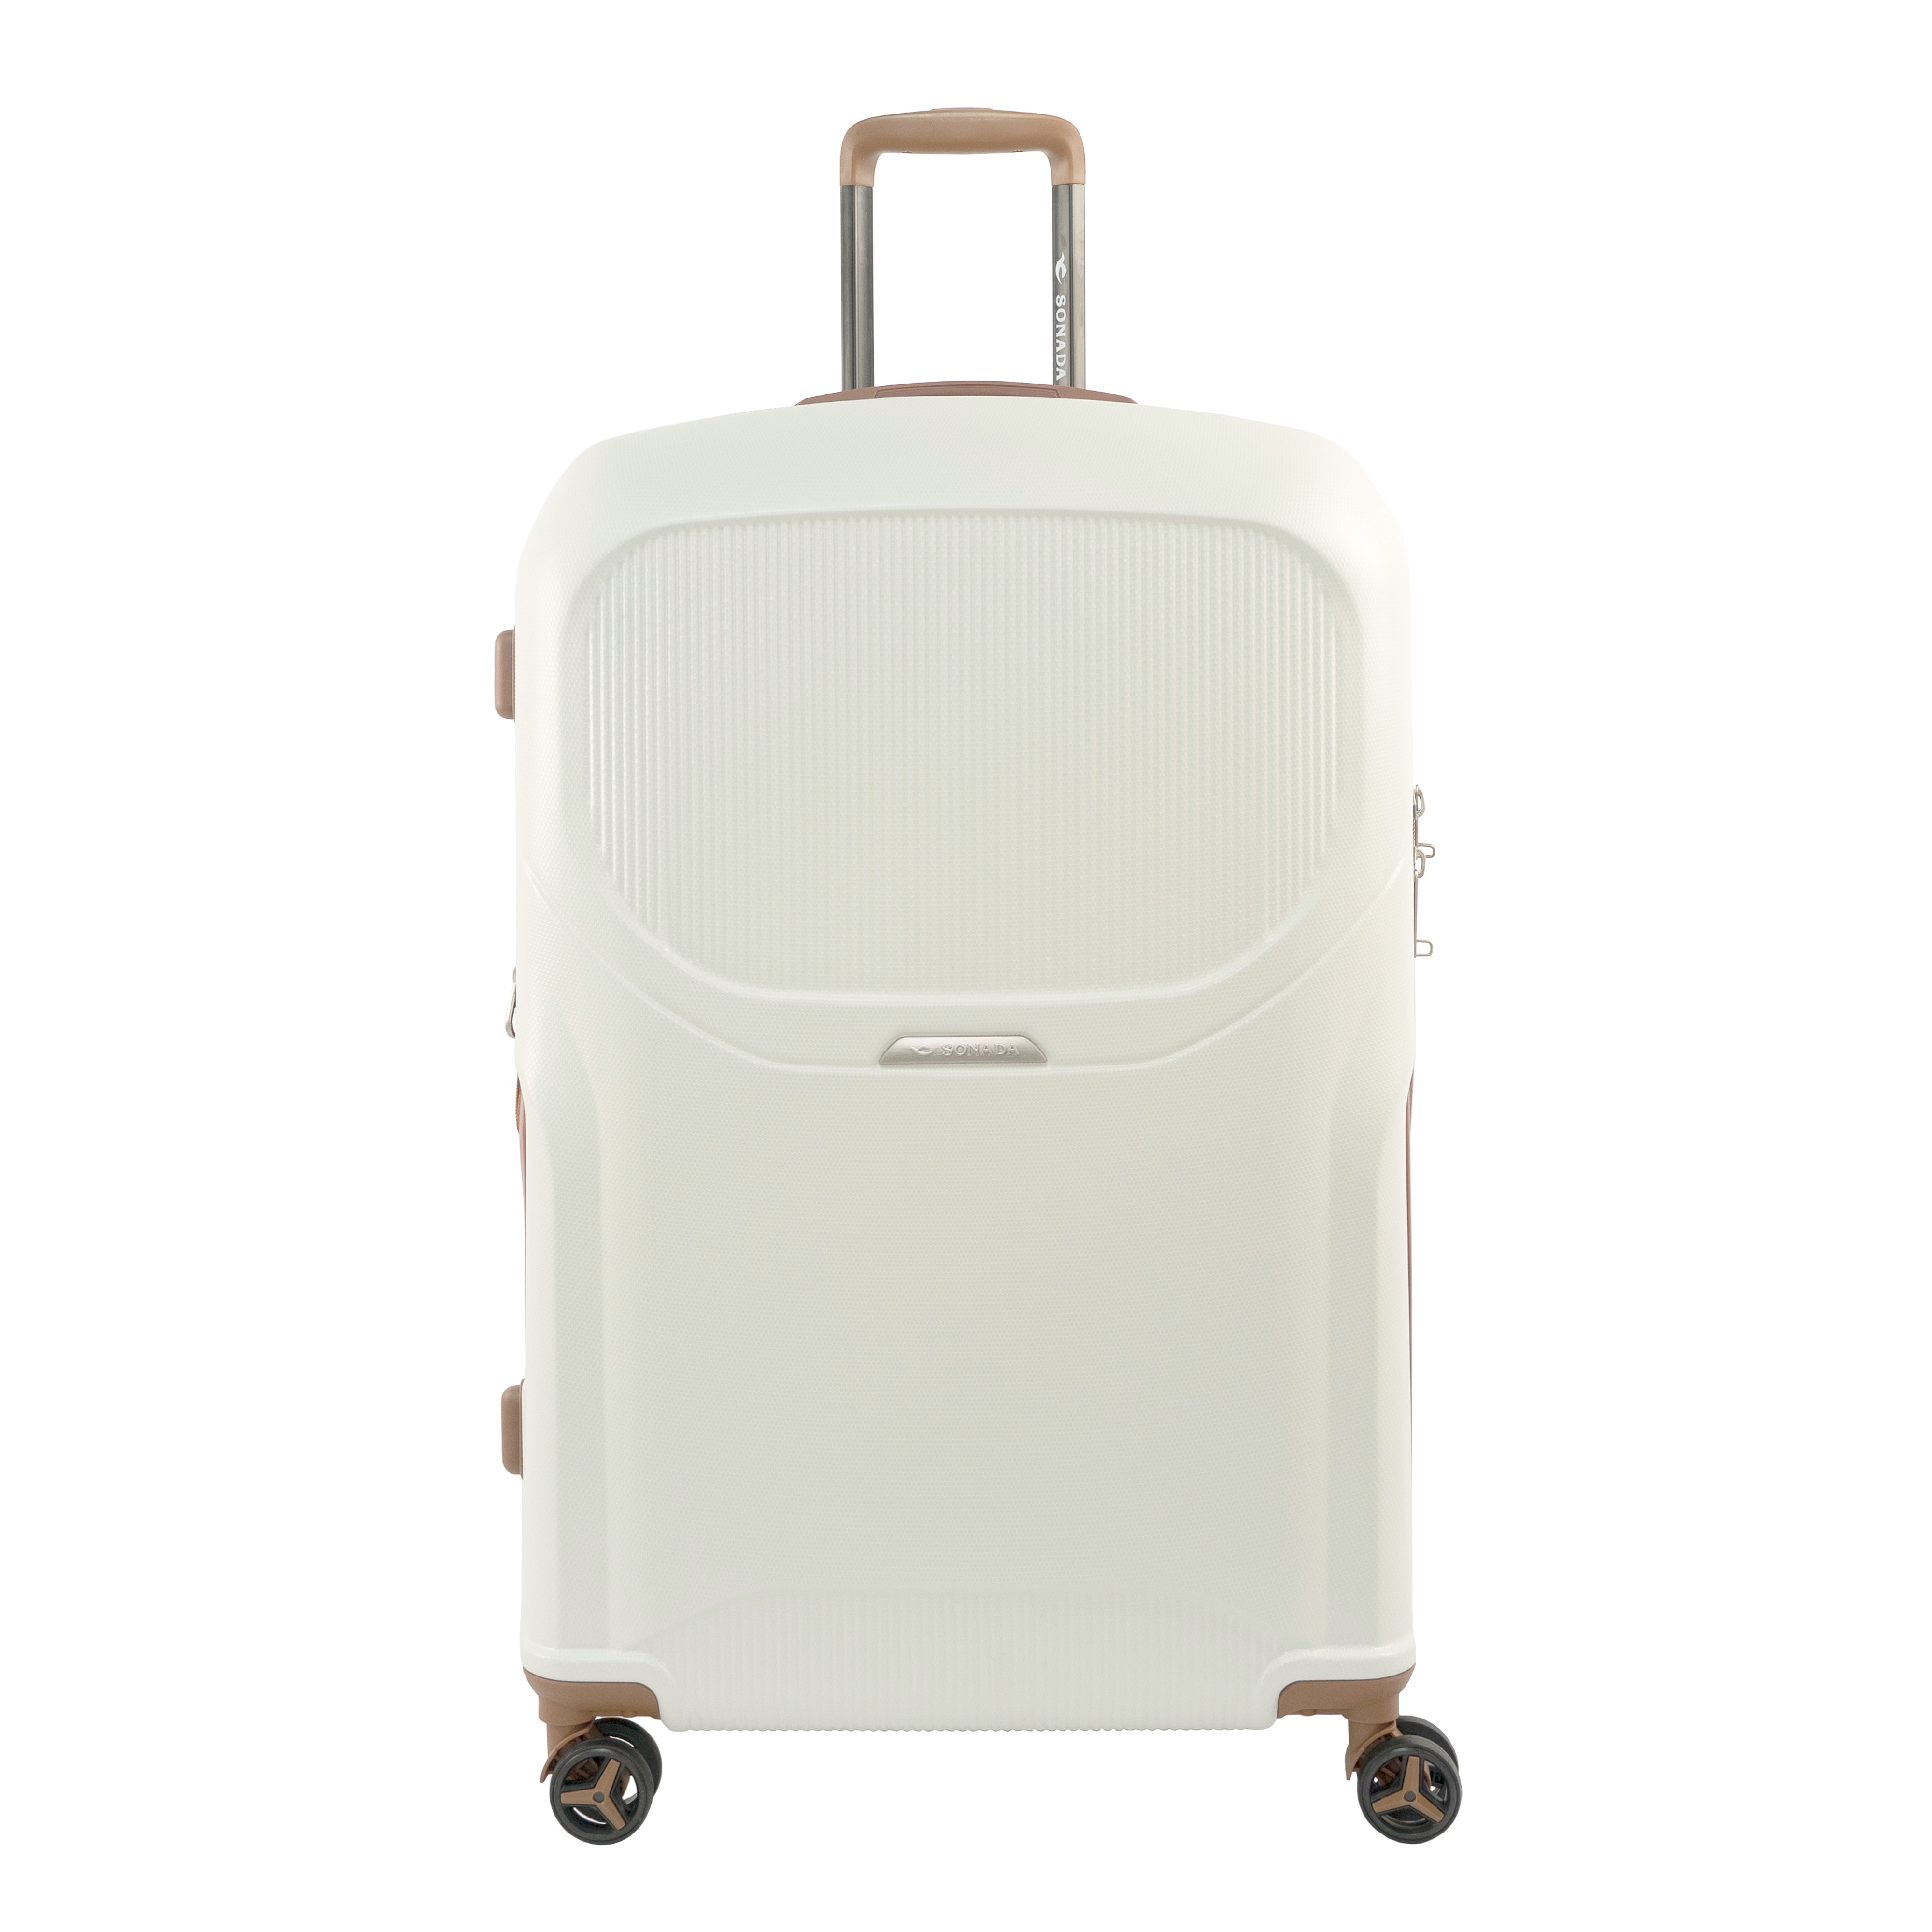 Sonada Upright Luggage Expandable Hardside Suitcase Check In White